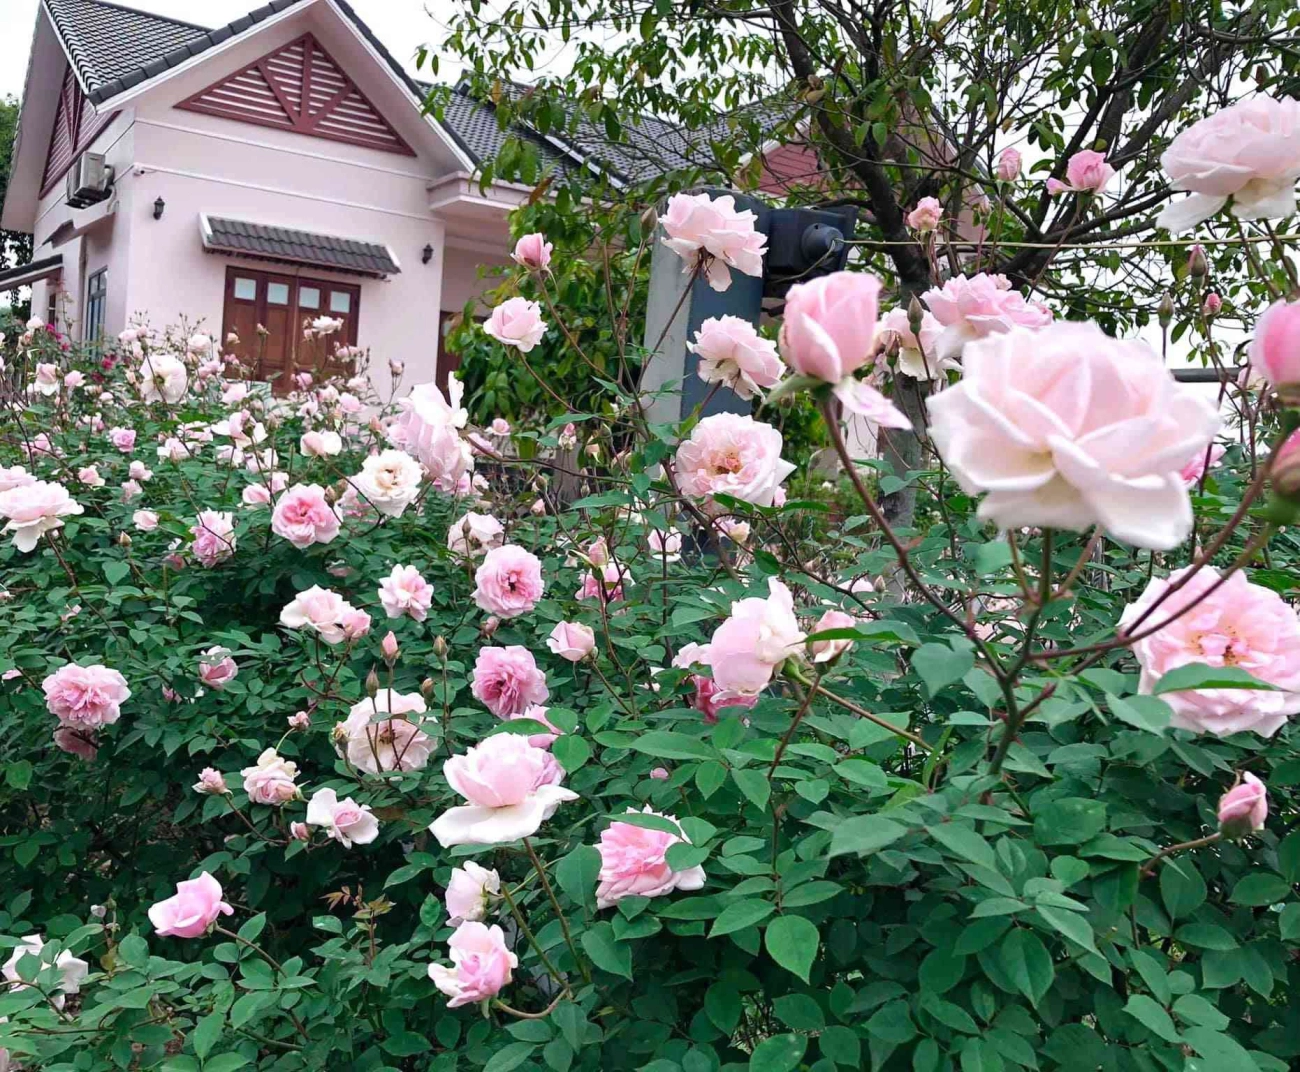 Căn nhà tràn ngập hoa hồng ở ba vì gây bão mạng - 5